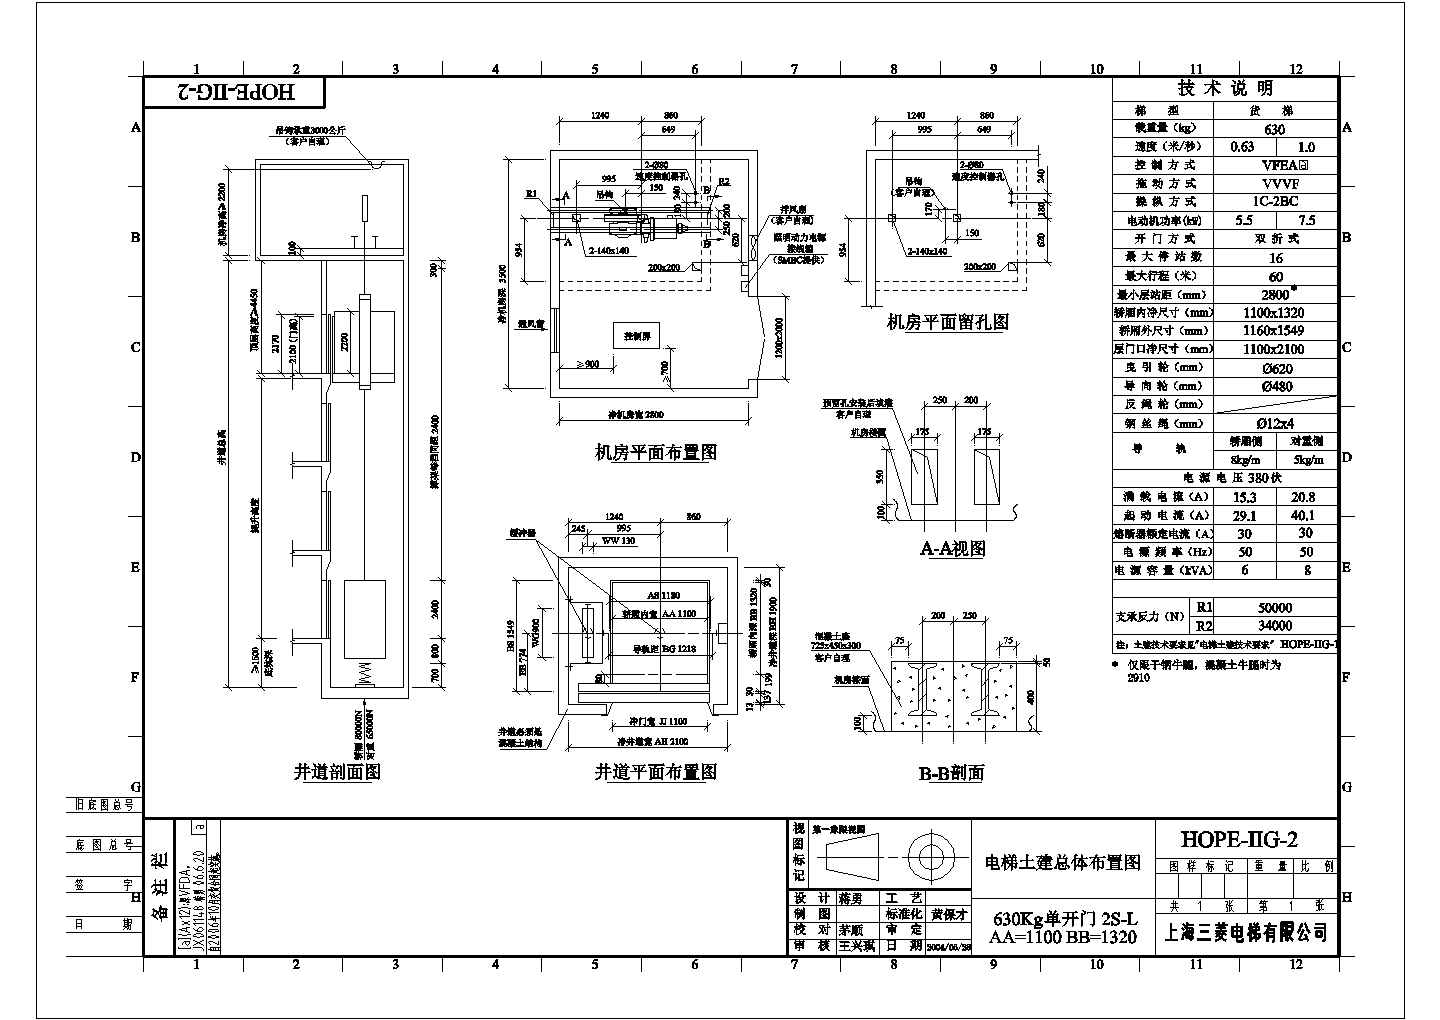 上海三菱电梯货梯土建总体布置图纸